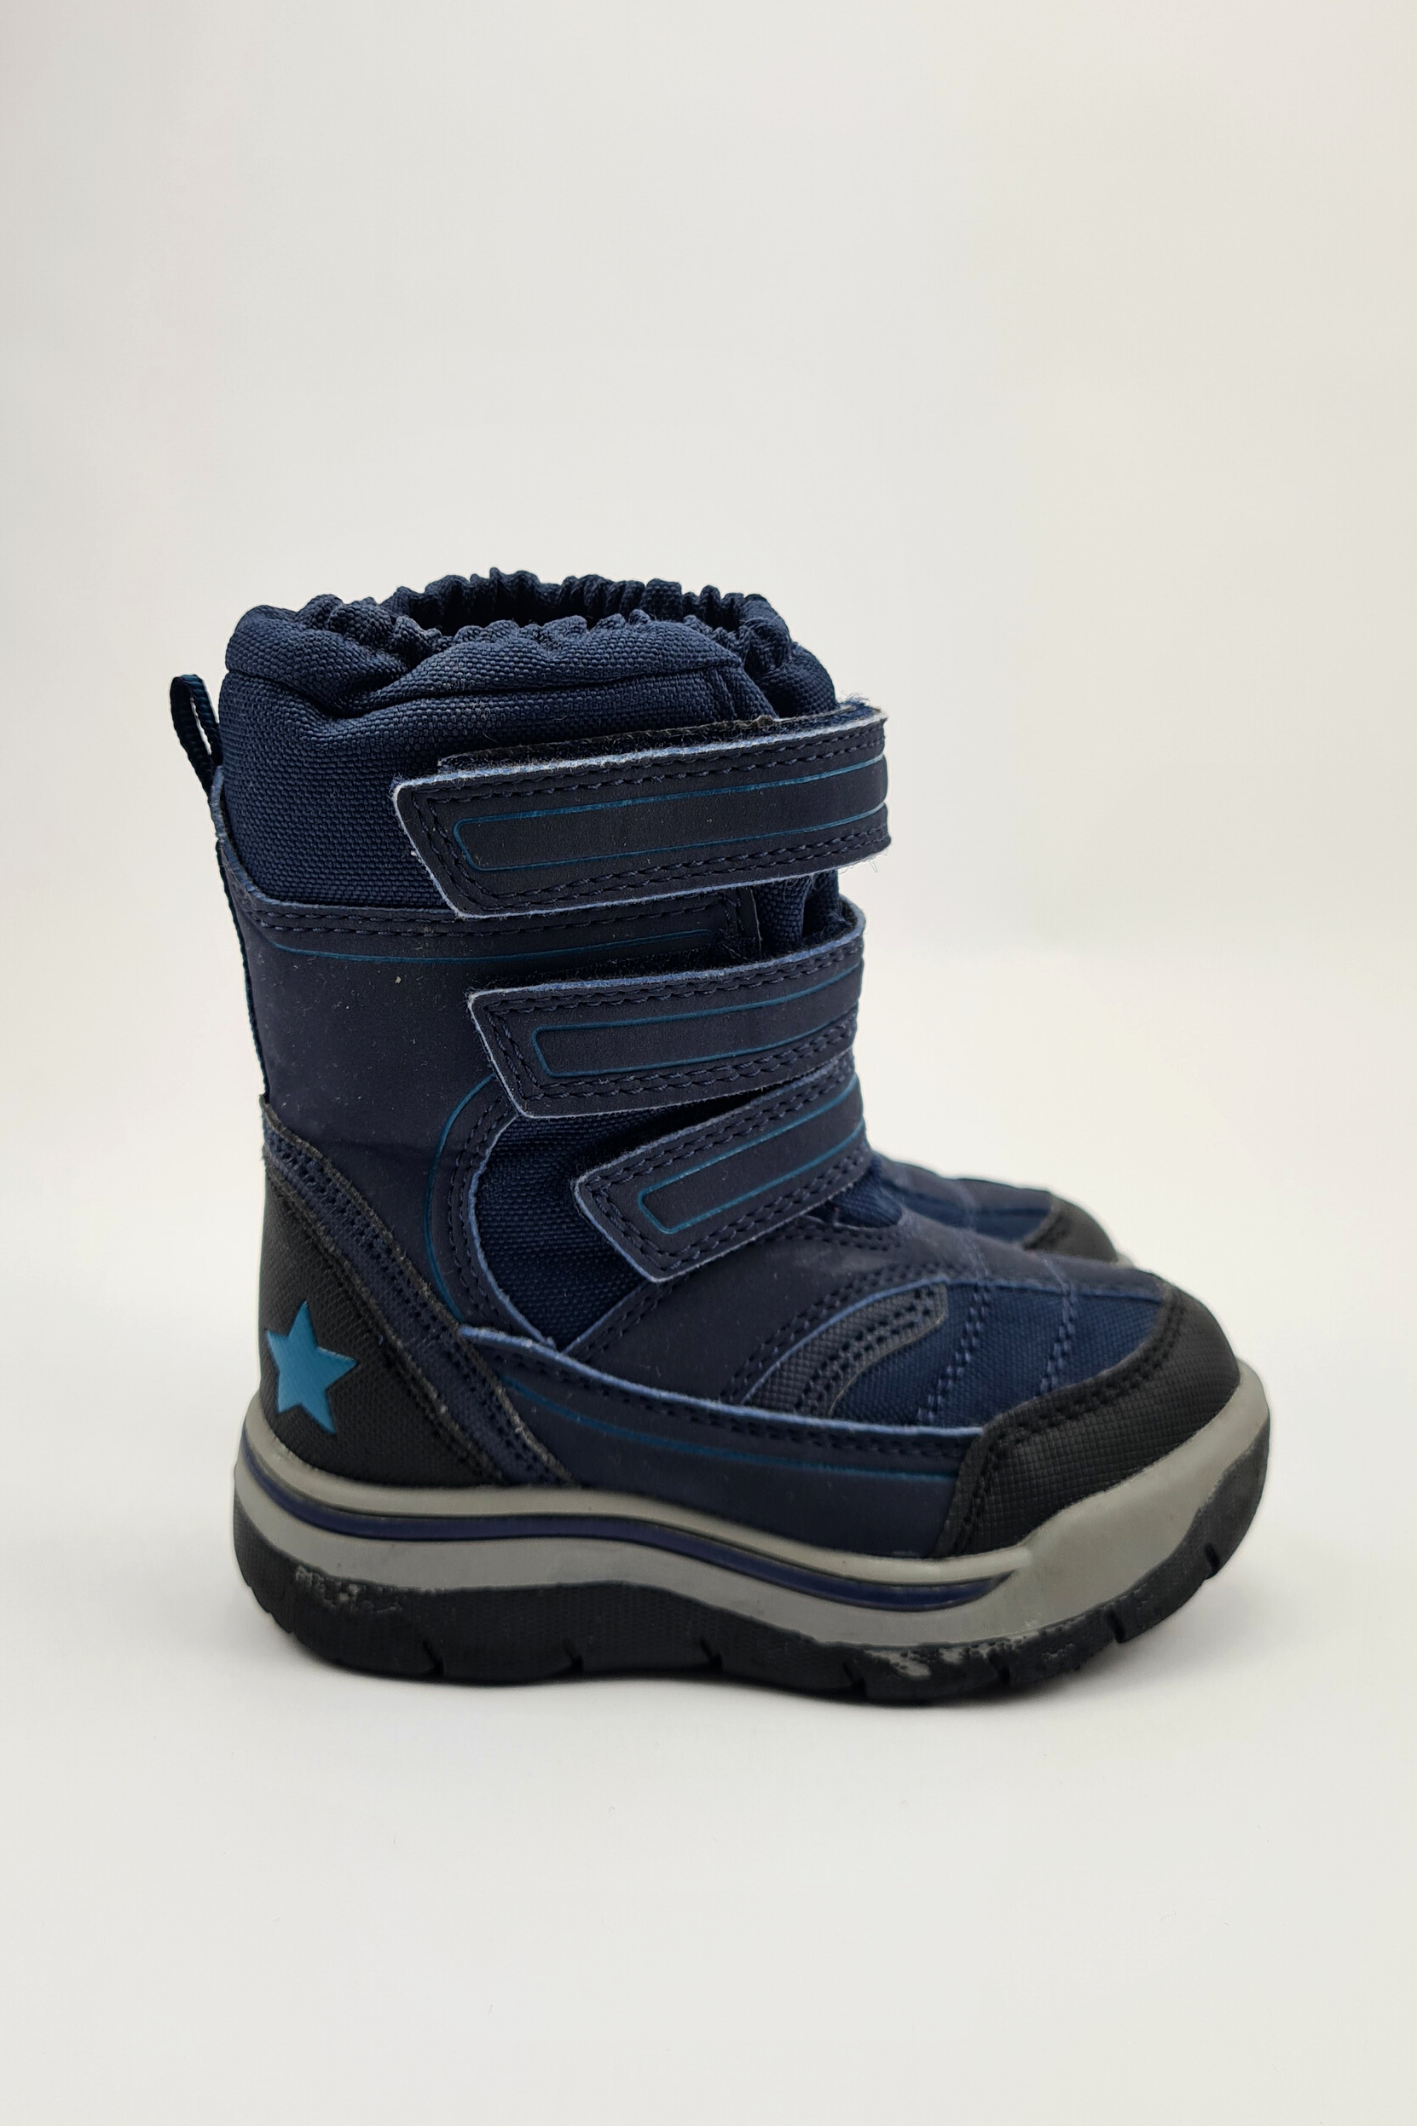 Taille 5 - Bottes de neige bleu marine à sangles Velcro (Suivant)